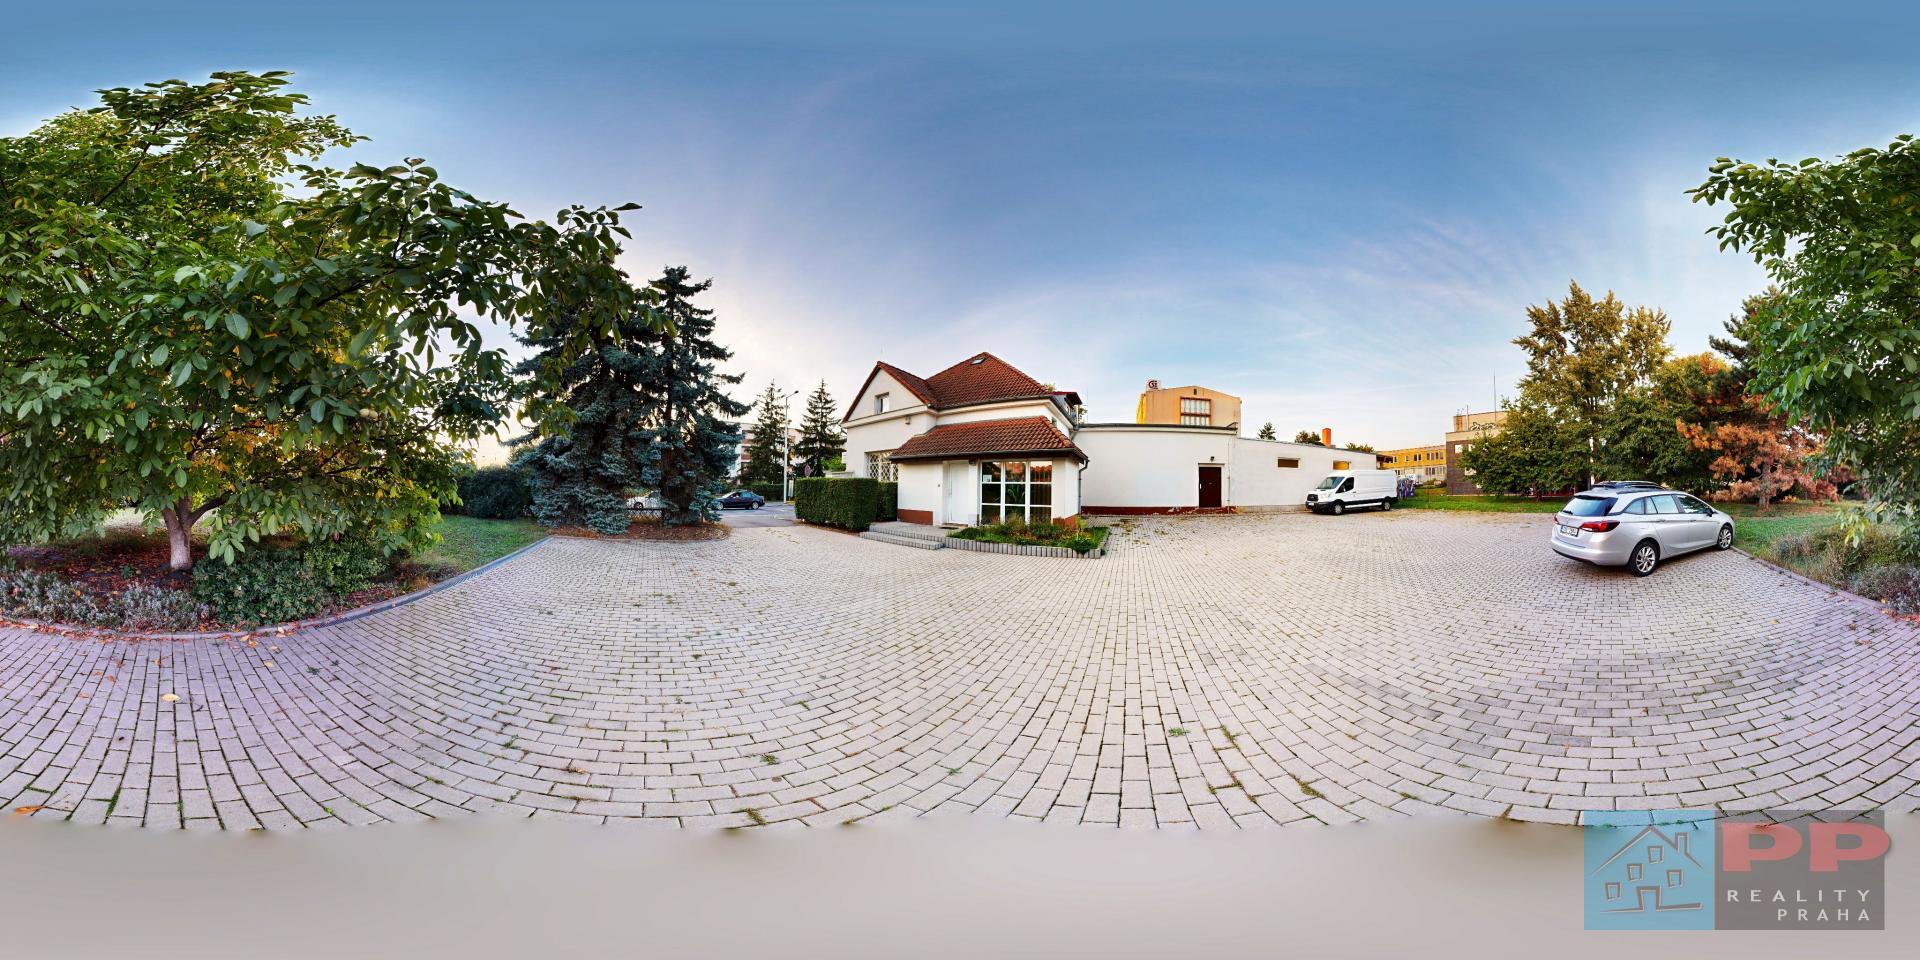 Prodej komerční nemovitosti RD 6+1, 336m2, pozemek 1.606m2, Praha 10 - Hostivař, ul. Pražská, obrázek č. 3